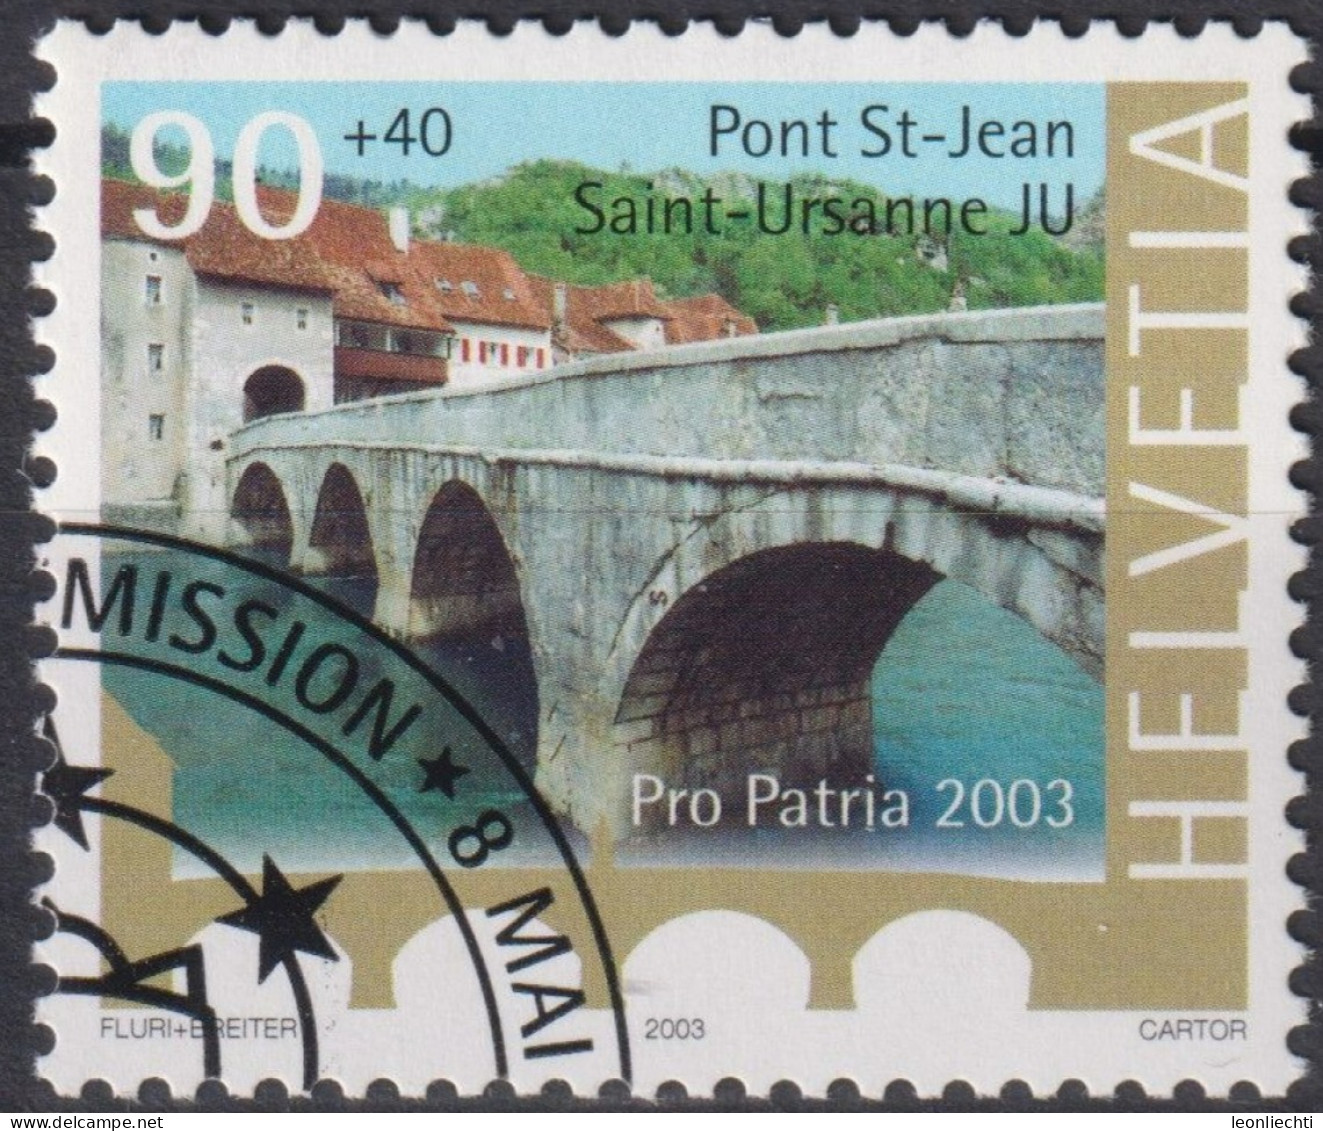 2003 Schweiz Pro Patria, Pont St-Jean, Saint-Ursanne JU ⵙ Zum:CH B282, Mi:CH 1834, Yt:CH 1759 - Used Stamps